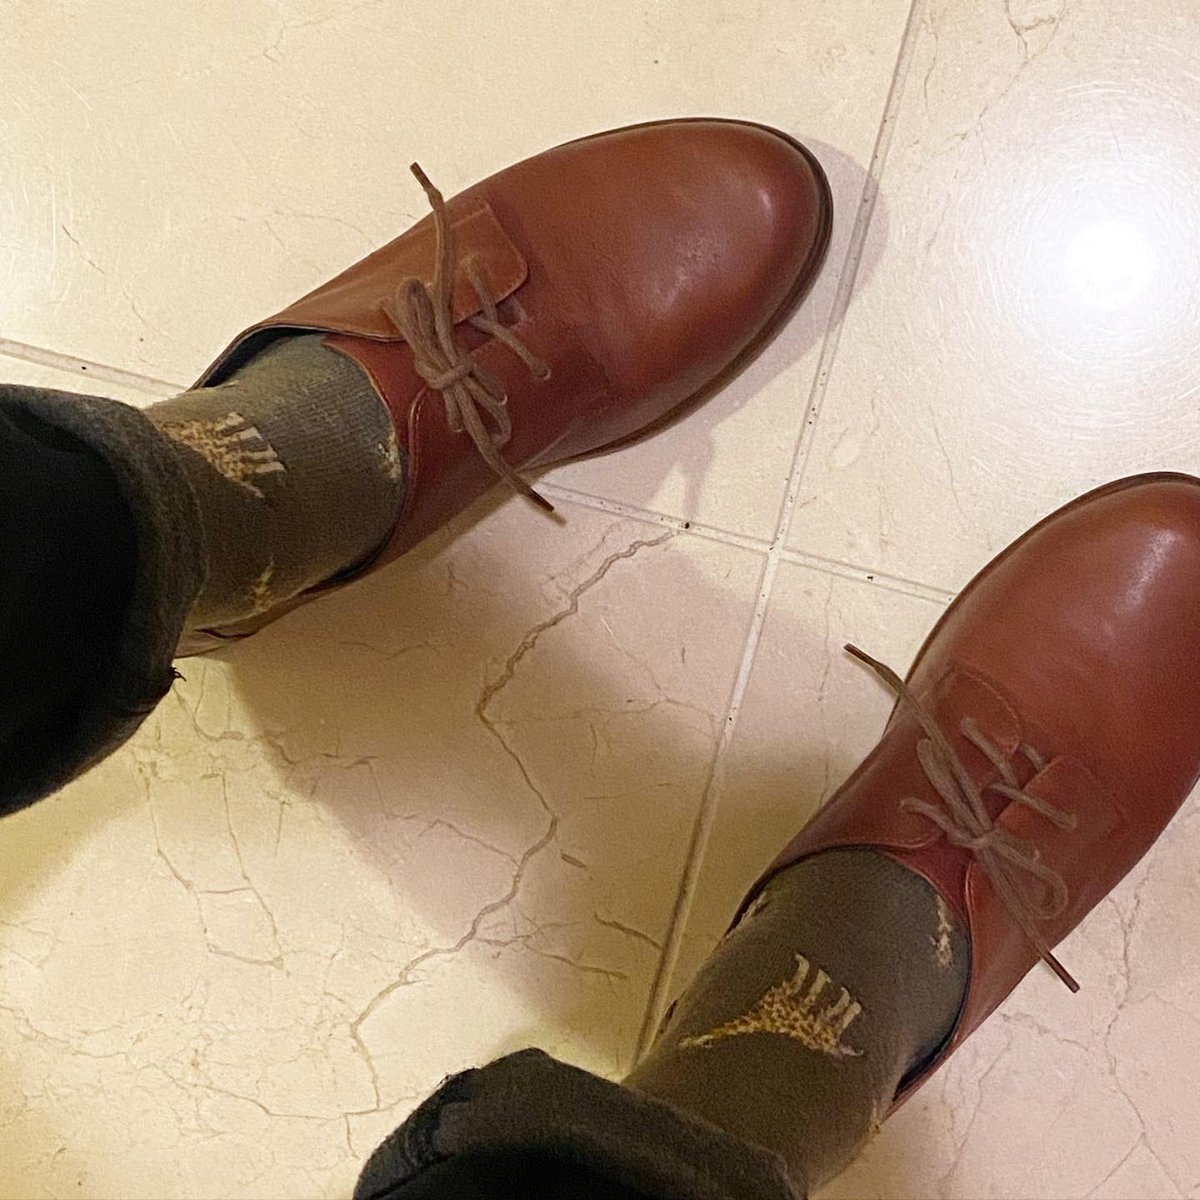 「先日、本屋生活綴方   の受注会で注文したNAOTの革靴が届く。自分の色に育てる」|成田ネコーシカ画伯のイラスト